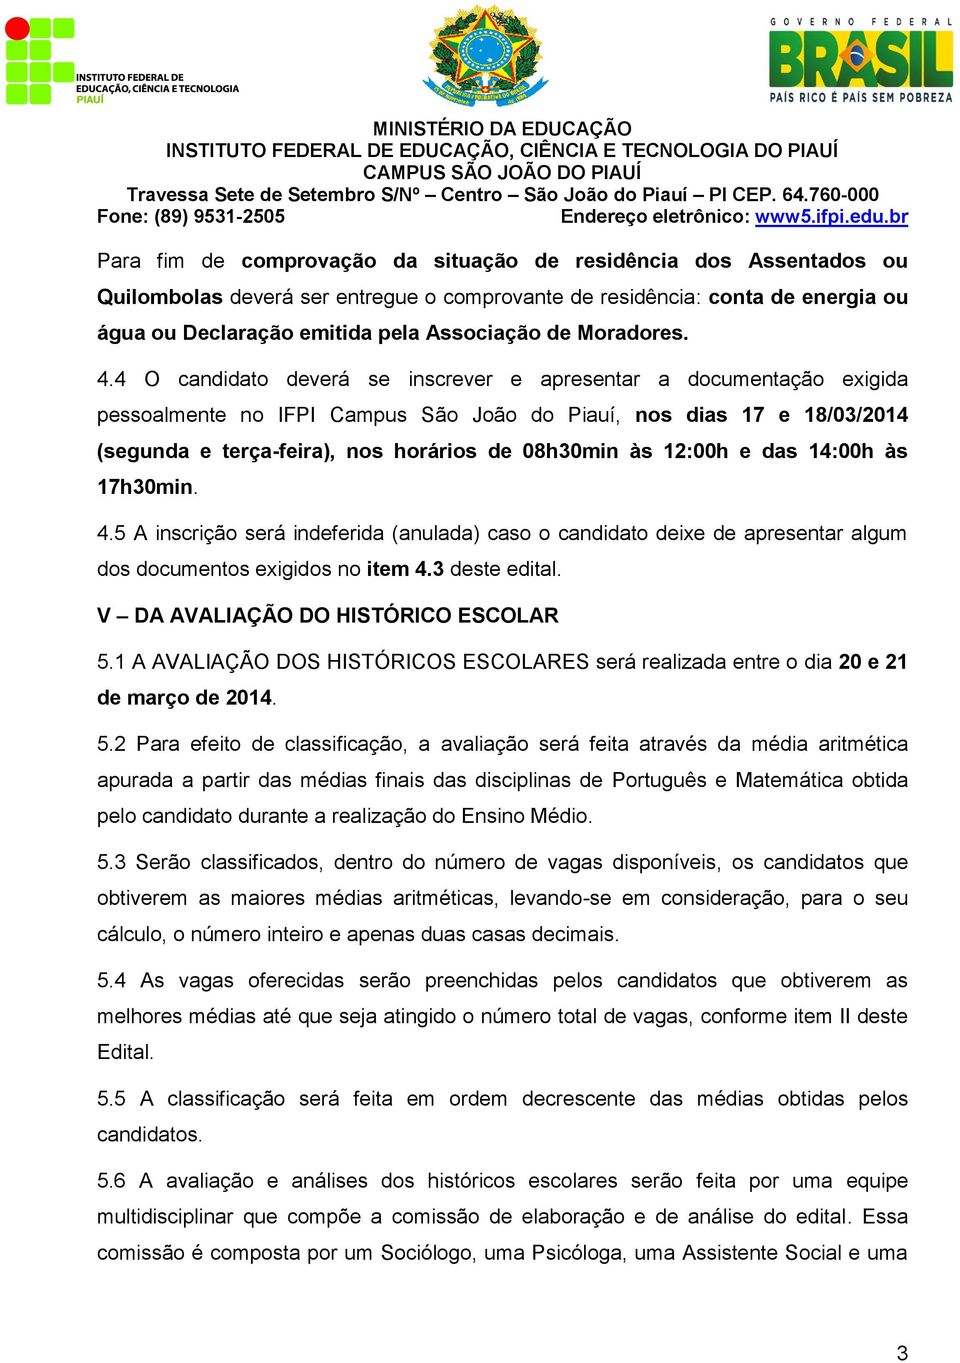 4 O candidato deverá se inscrever e apresentar a documentação exigida pessoalmente no IFPI Campus São João do Piauí, nos dias 17 e 18/03/2014 (segunda e terça-feira), nos horários de 08h30min às